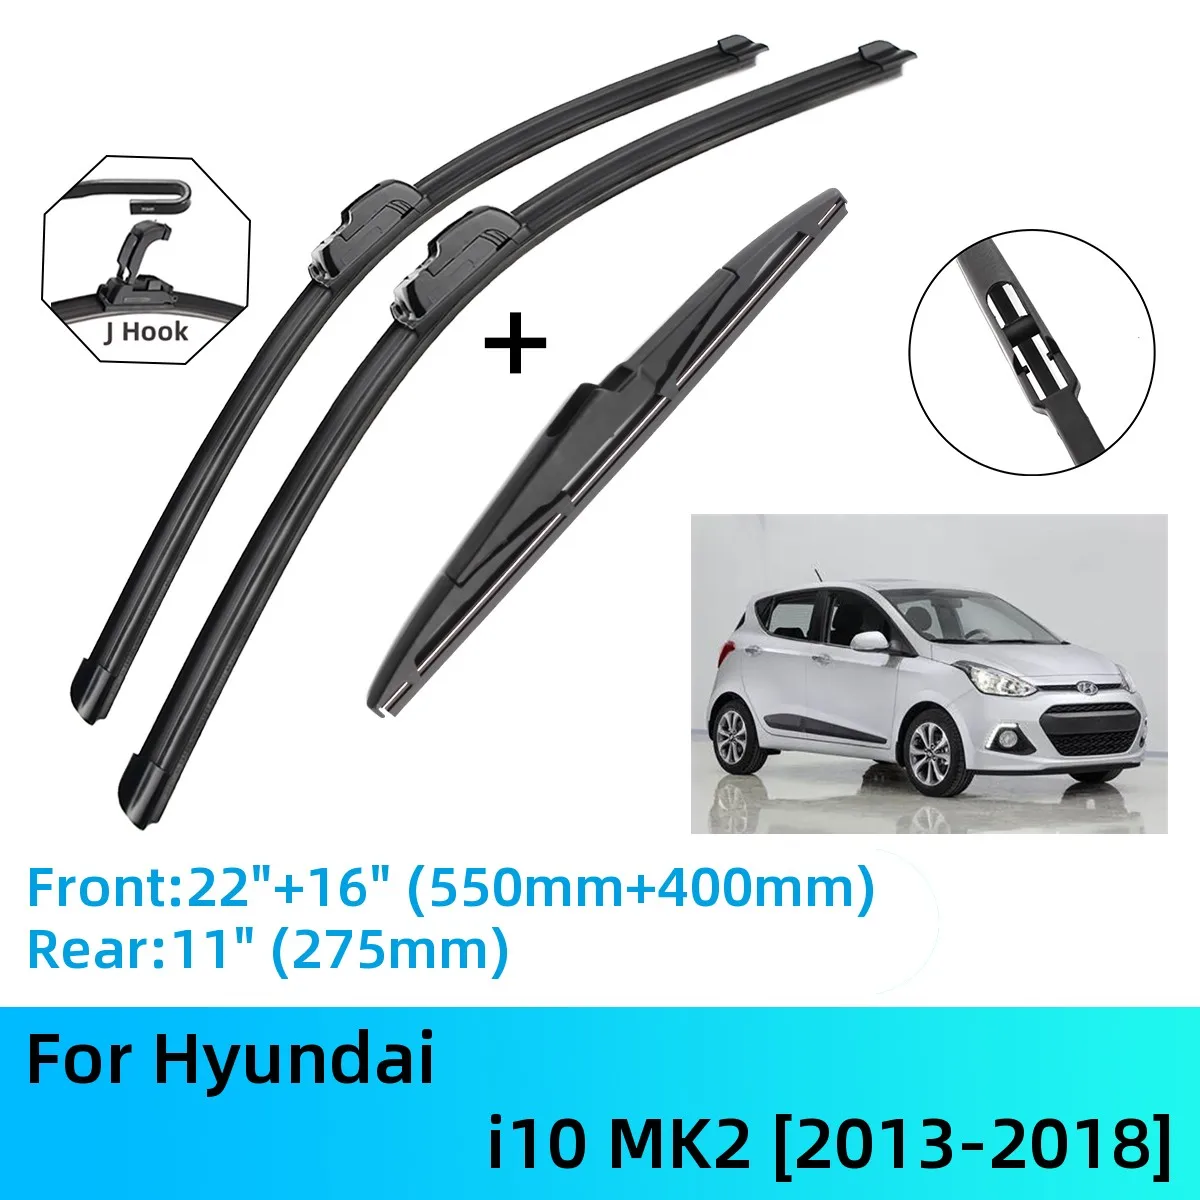 

For Hyundai i10 MK2 Front Rear Wiper Blades Brushes Cutter Accessories J U Hook 2013-2018 2013 2014 2015 2016 2017 2018